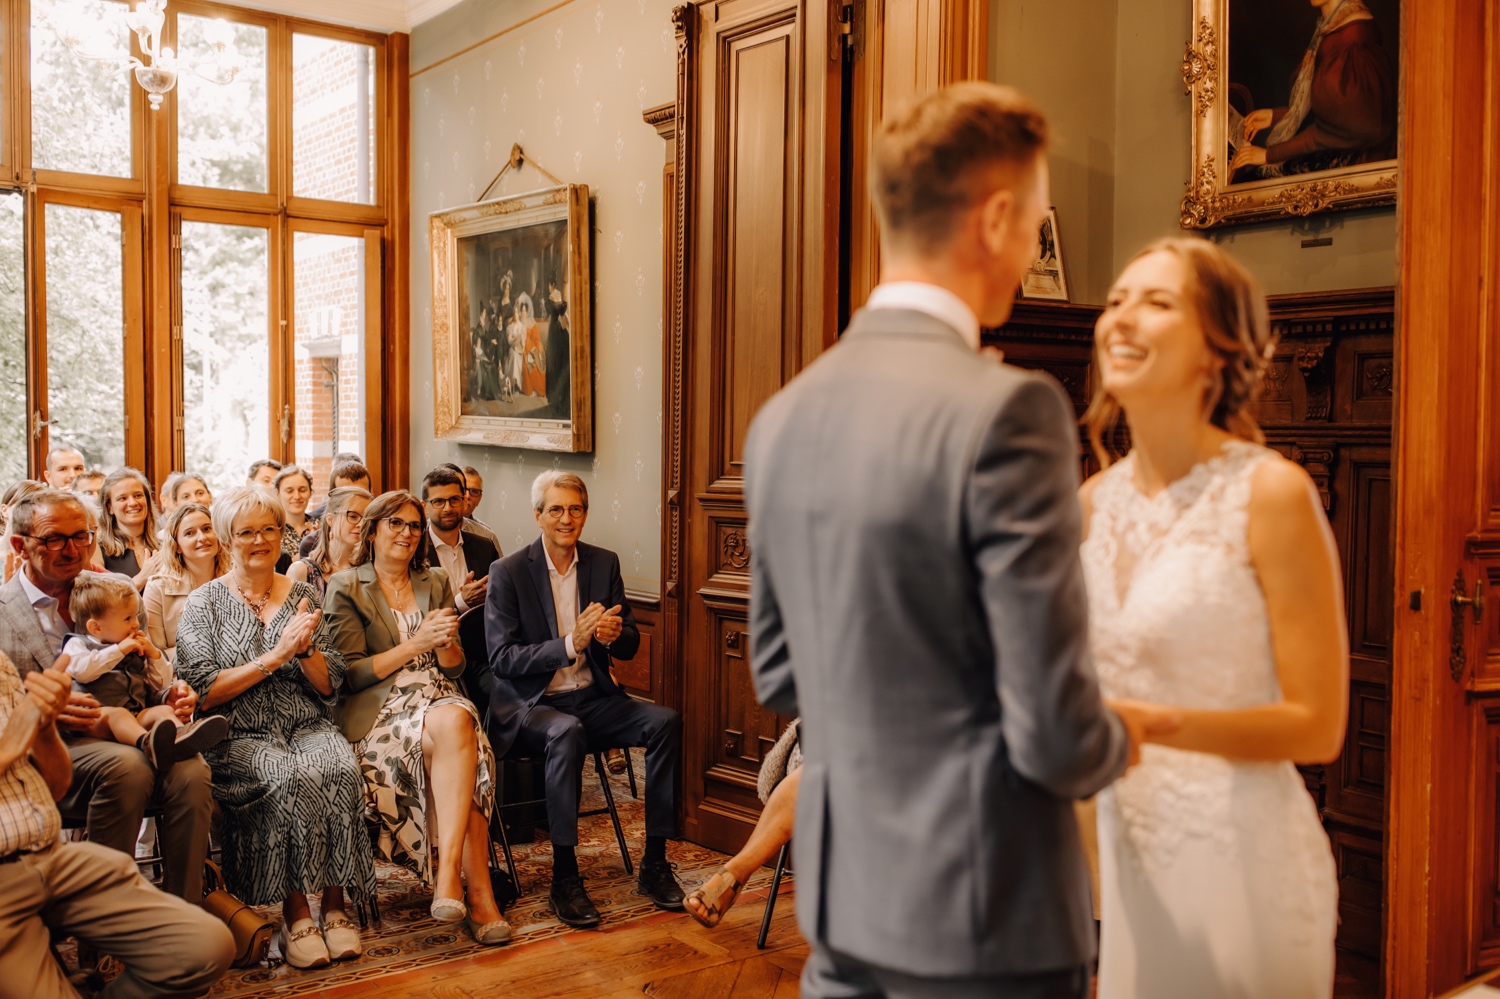 Huwelijksfotograaf limburg - gasten applaudisseren voor bruidspaar